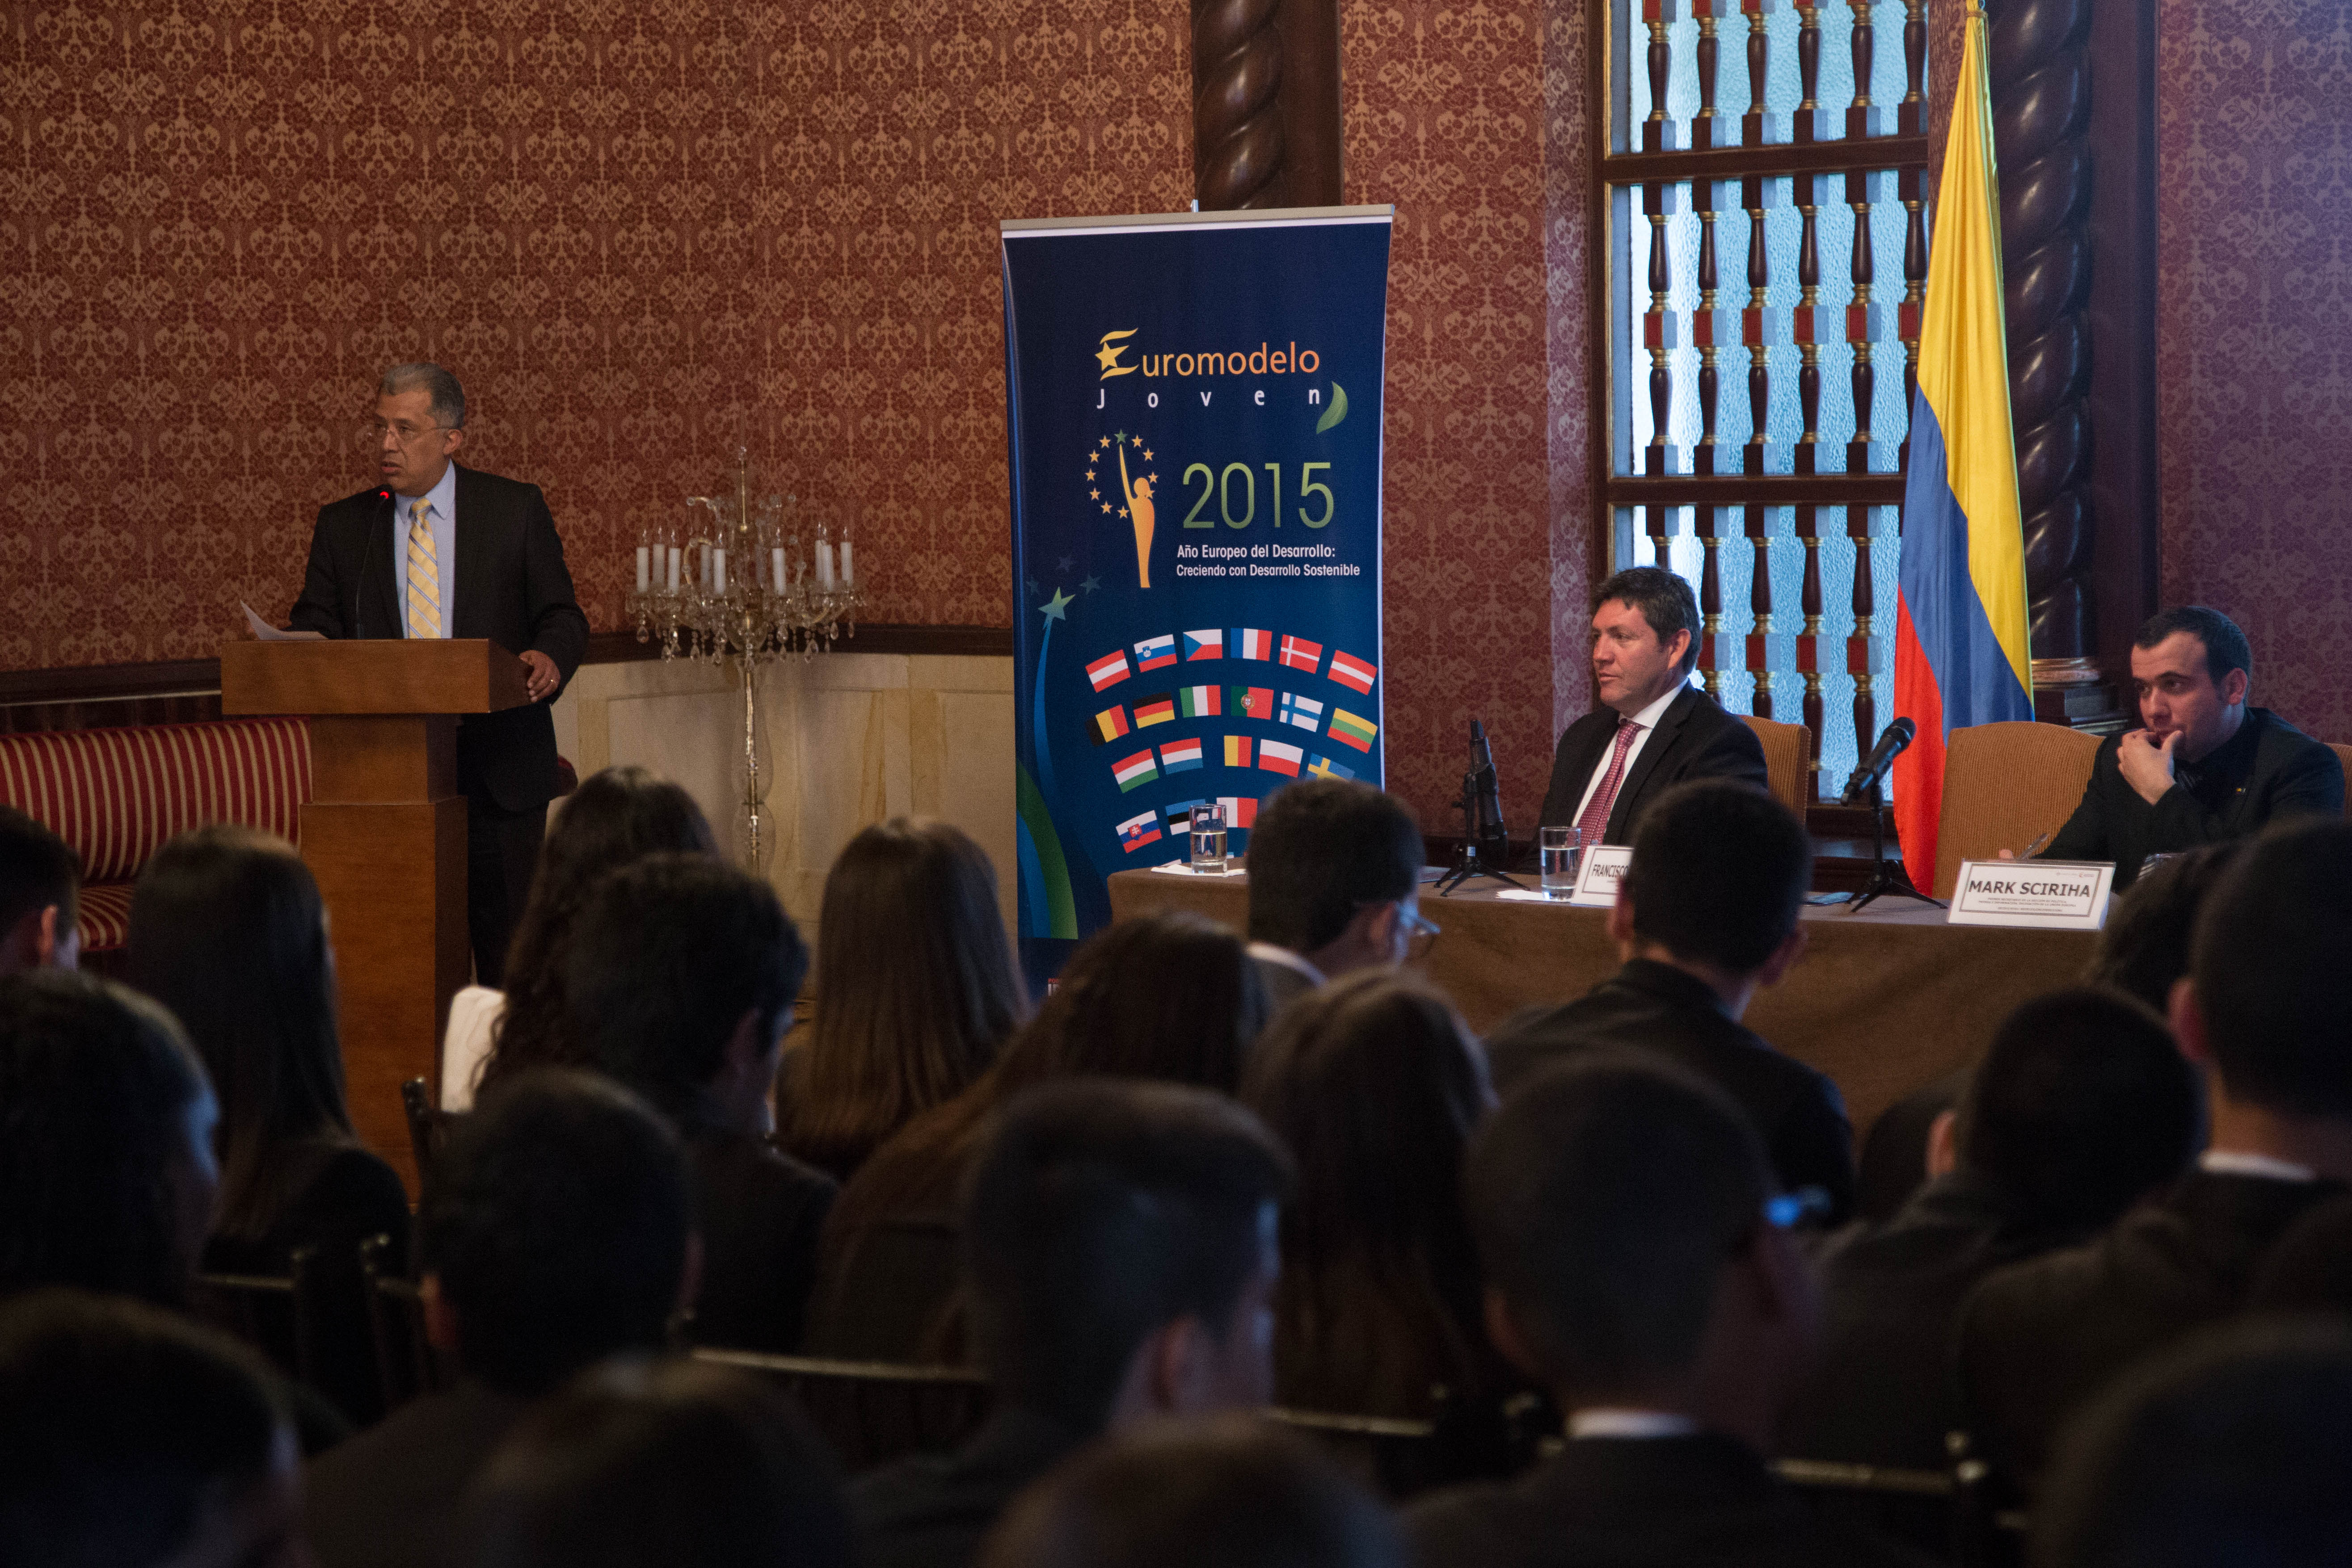 Cancillería, relaciones de Colombia con la Unión Europea, Euromodelo Joven 2015